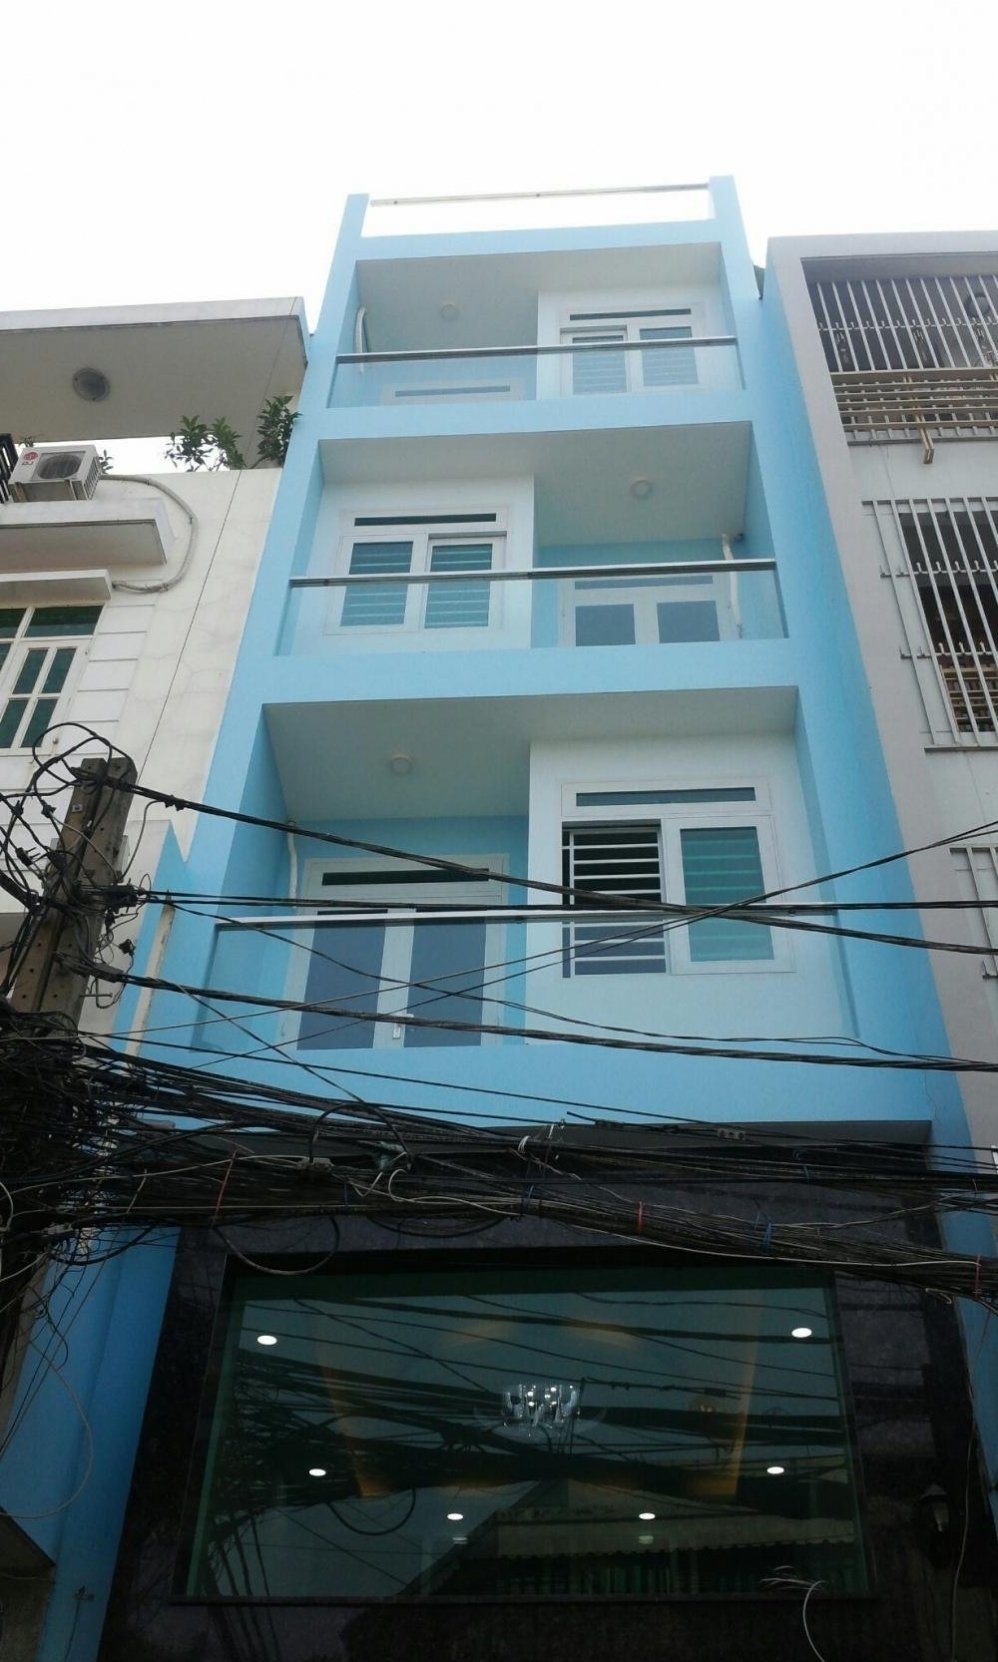  Bán gấp nhà mặt tiền đường Nguyễn Chí Thanh, Q5 ngay BV Chợ Rẫy (5,5 x 28) m giá 40 tỷ